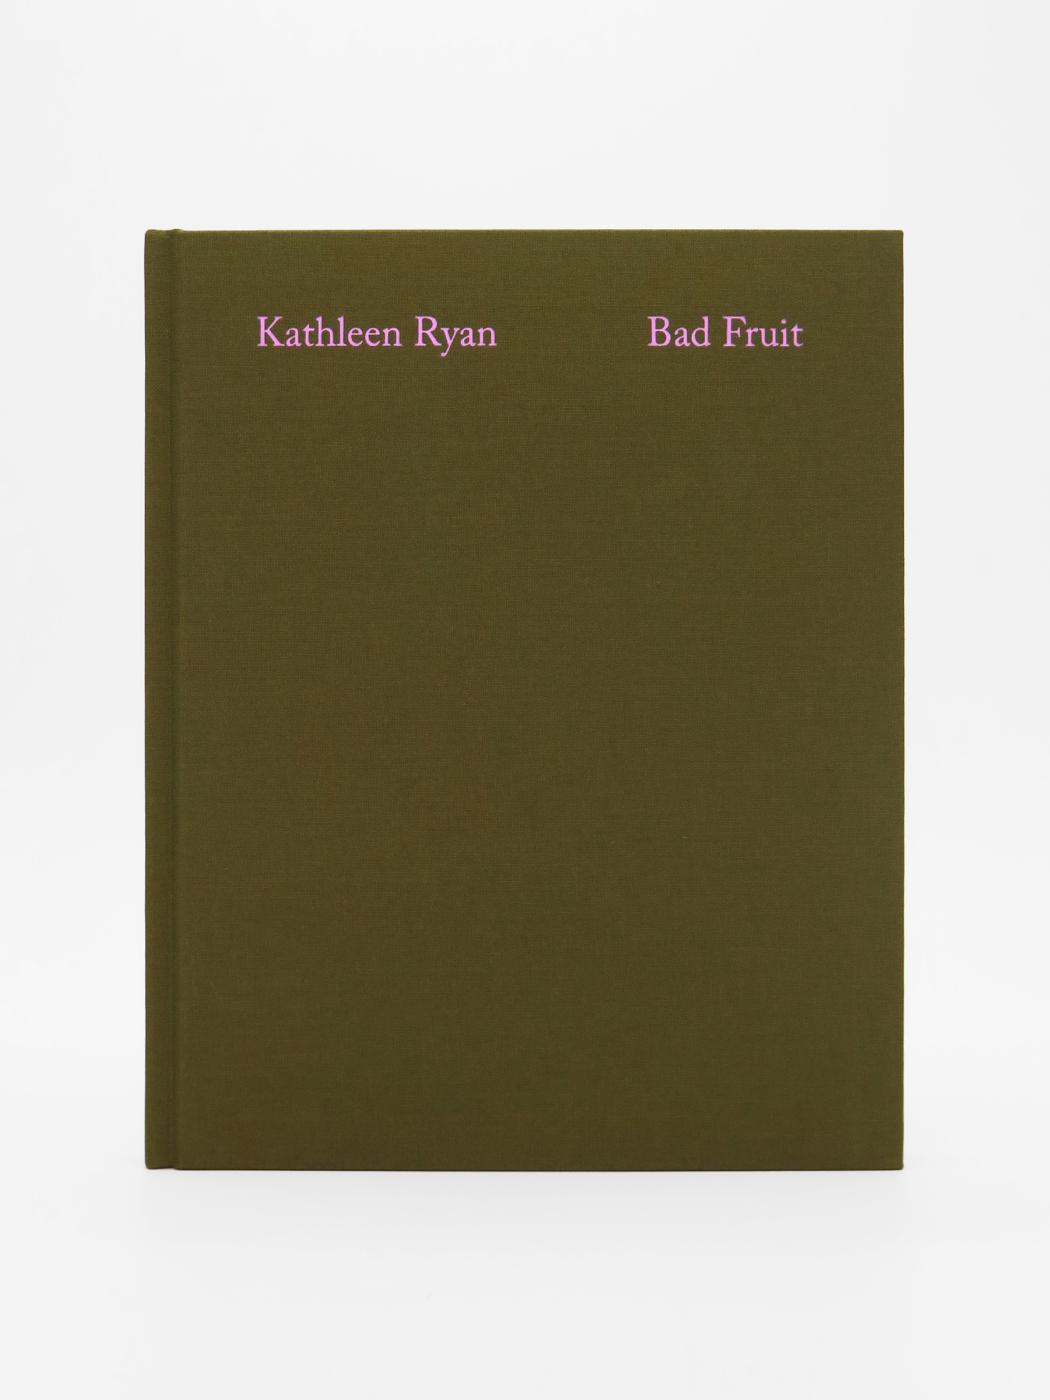 Kathleen Ryan, Bad Fruit